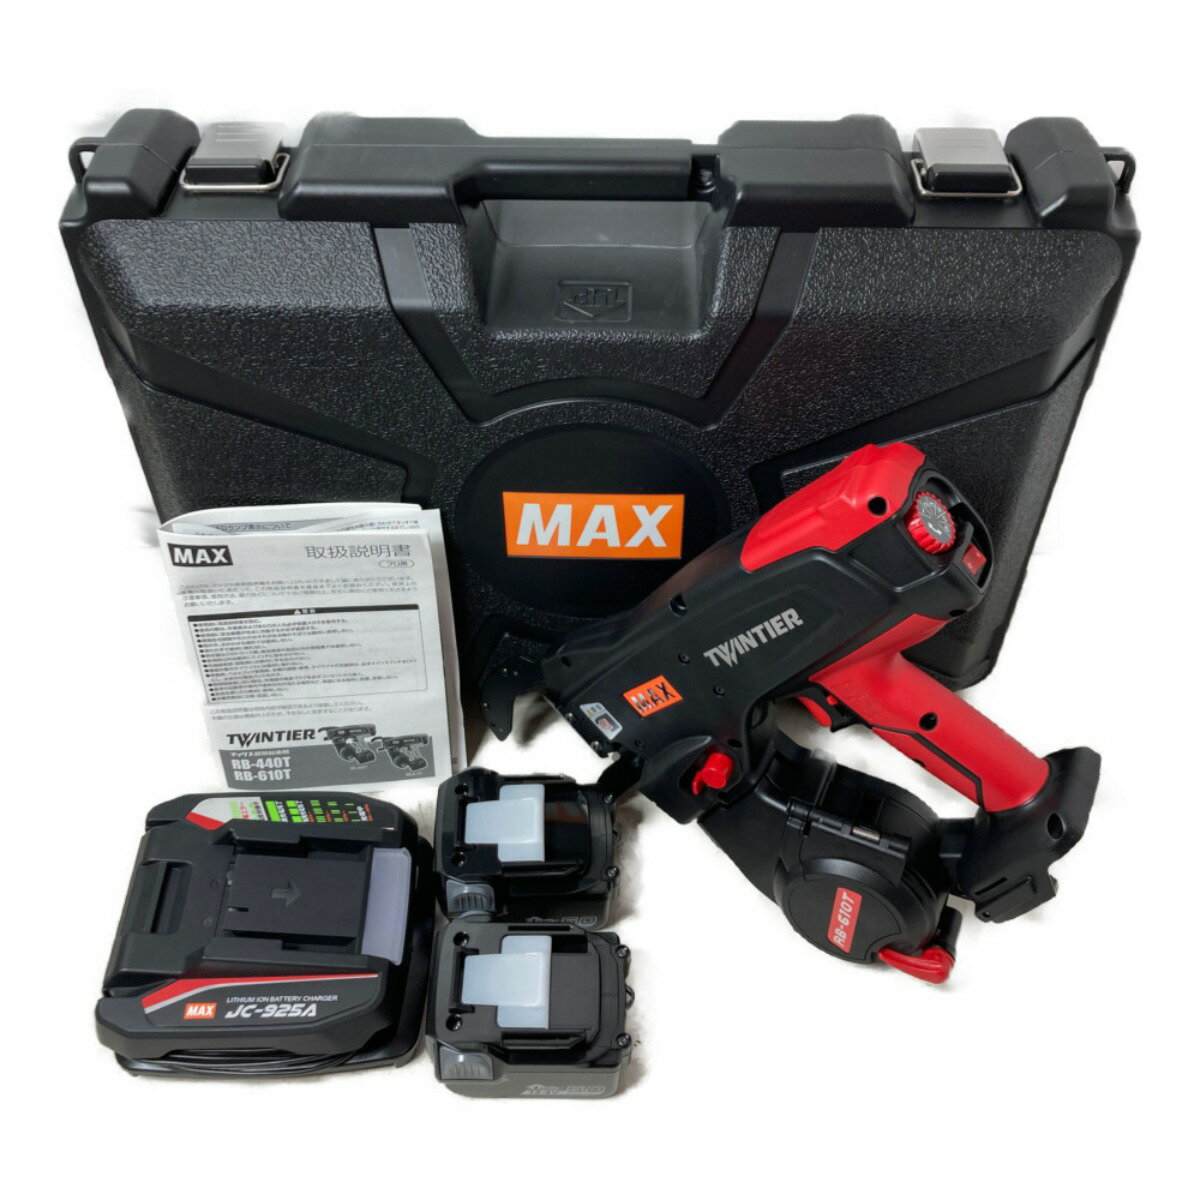 ＊＊【中古】MAX マックス 14.4V コードレス鉄筋結束機 ツインタイア (バッテリ2個・充電器・ケース付） RB-610T-B2C/1450A Sランク